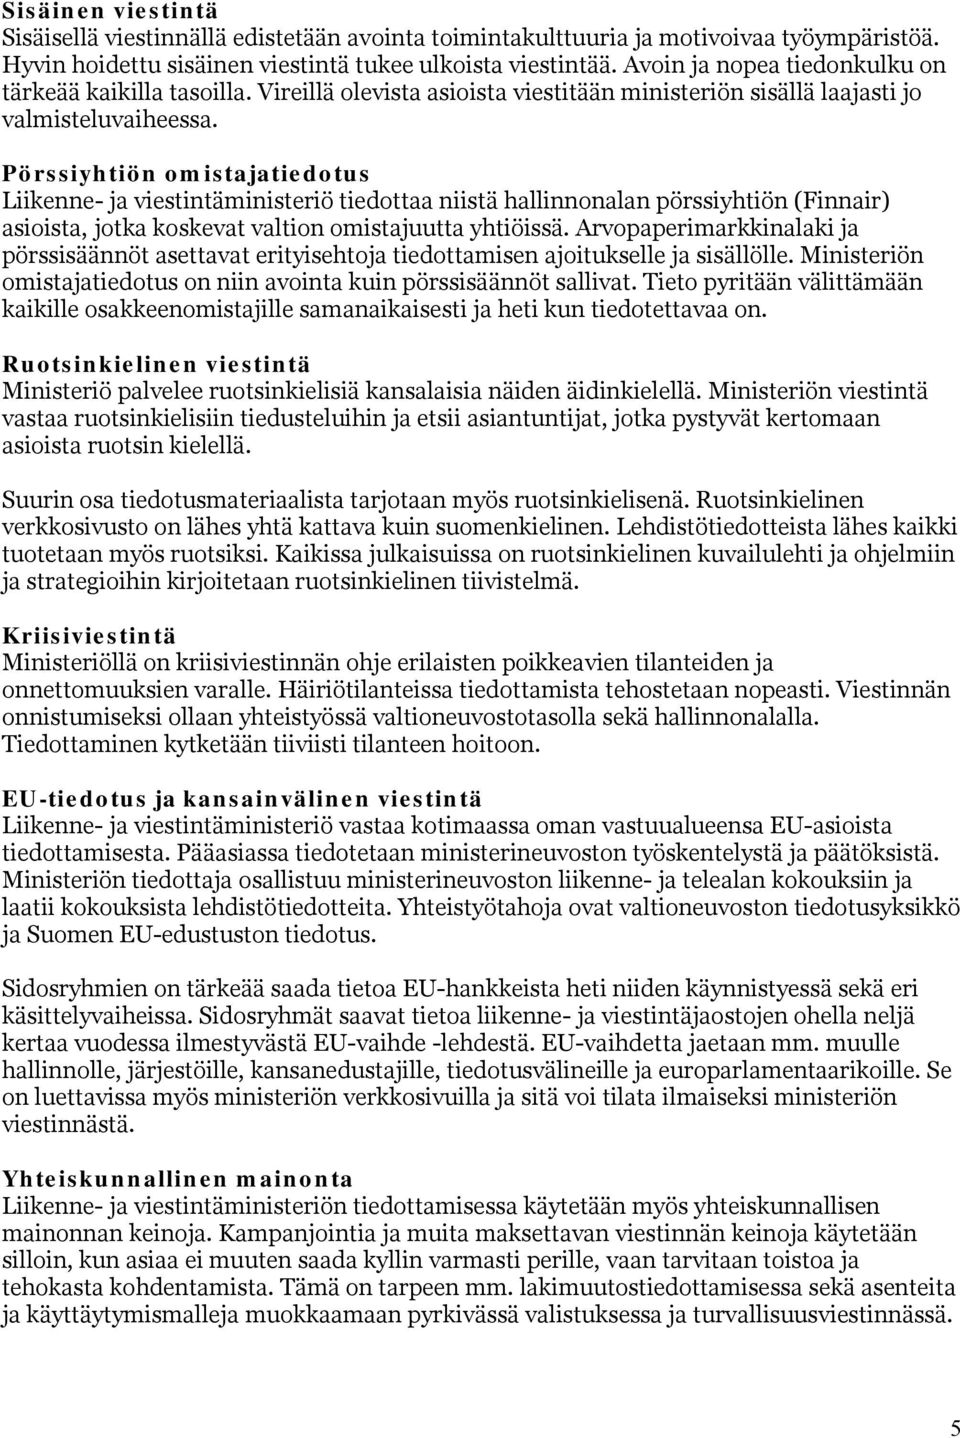 Pörssiyhtiön omistajatiedotus Liikenne- ja viestintäministeriö tiedottaa niistä hallinnonalan pörssiyhtiön (Finnair) asioista, jotka koskevat valtion omistajuutta yhtiöissä.